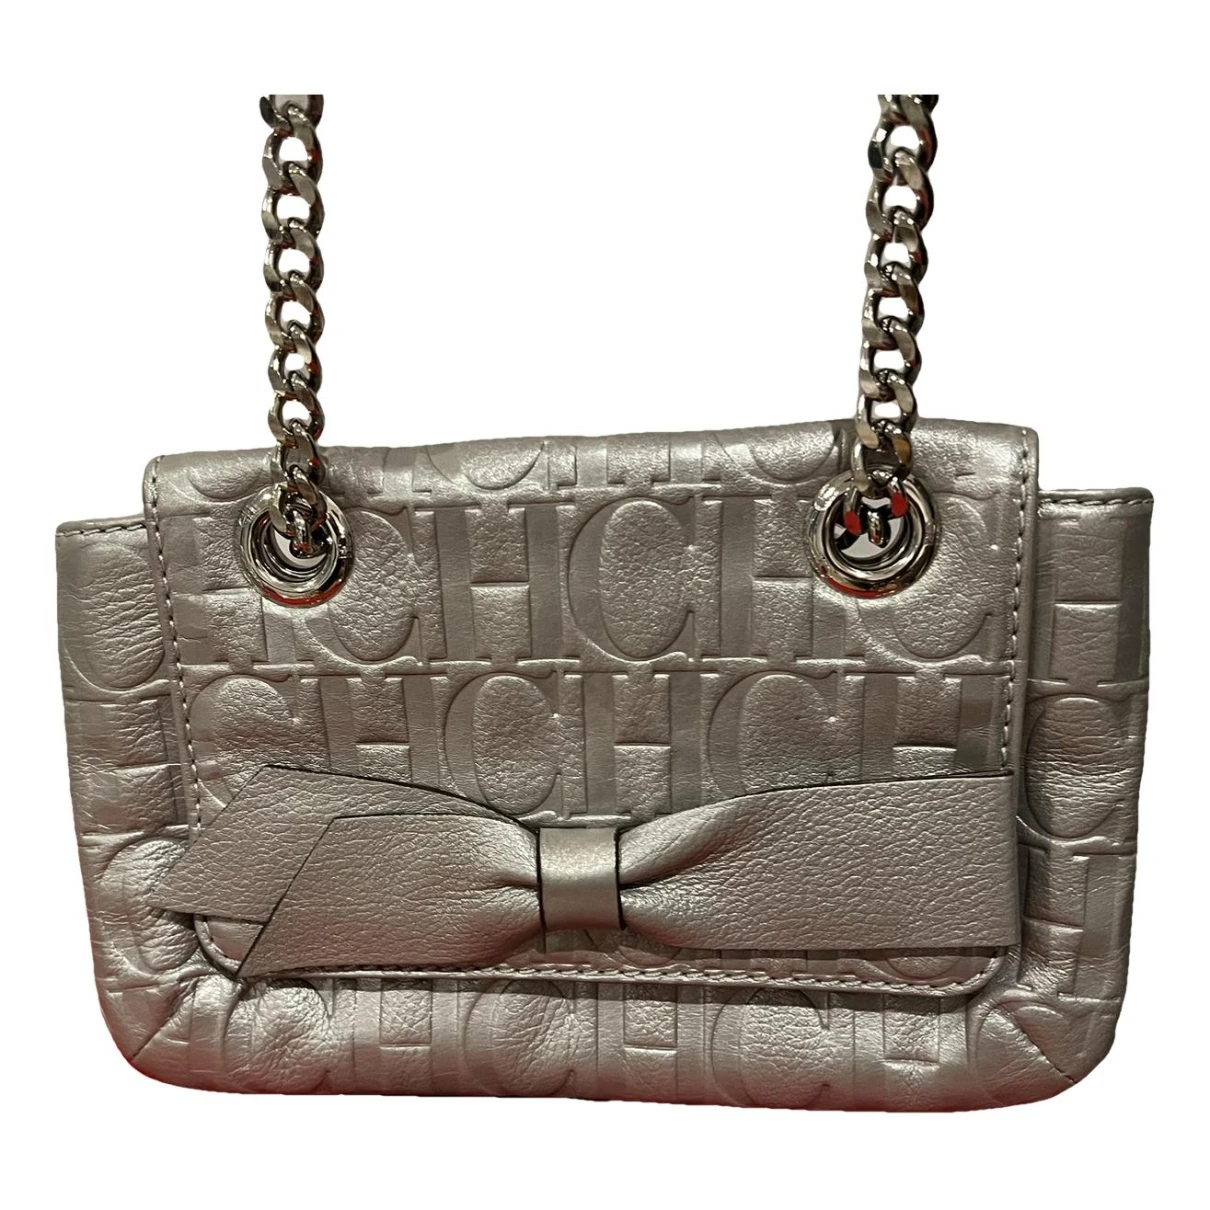 Pre-owned Carolina Herrera Leather Handbag In Silver